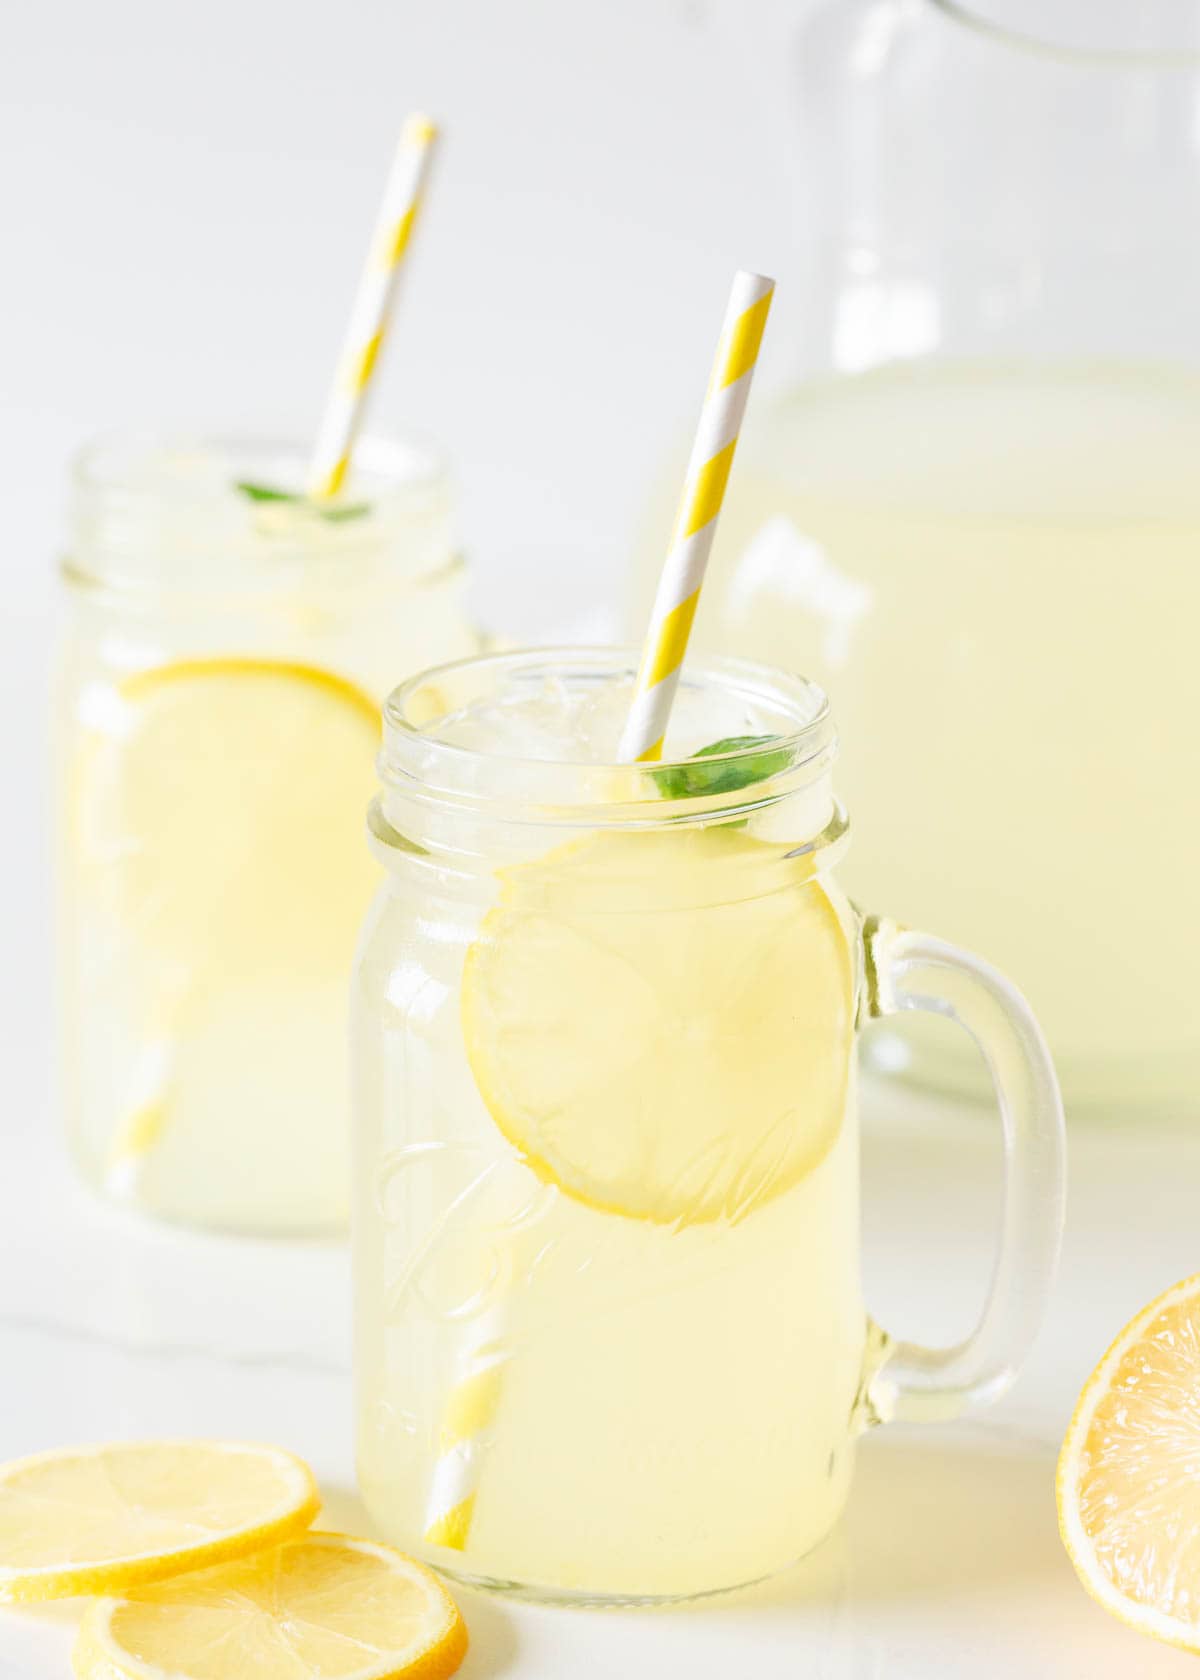 Homemade lemonade in a jar.